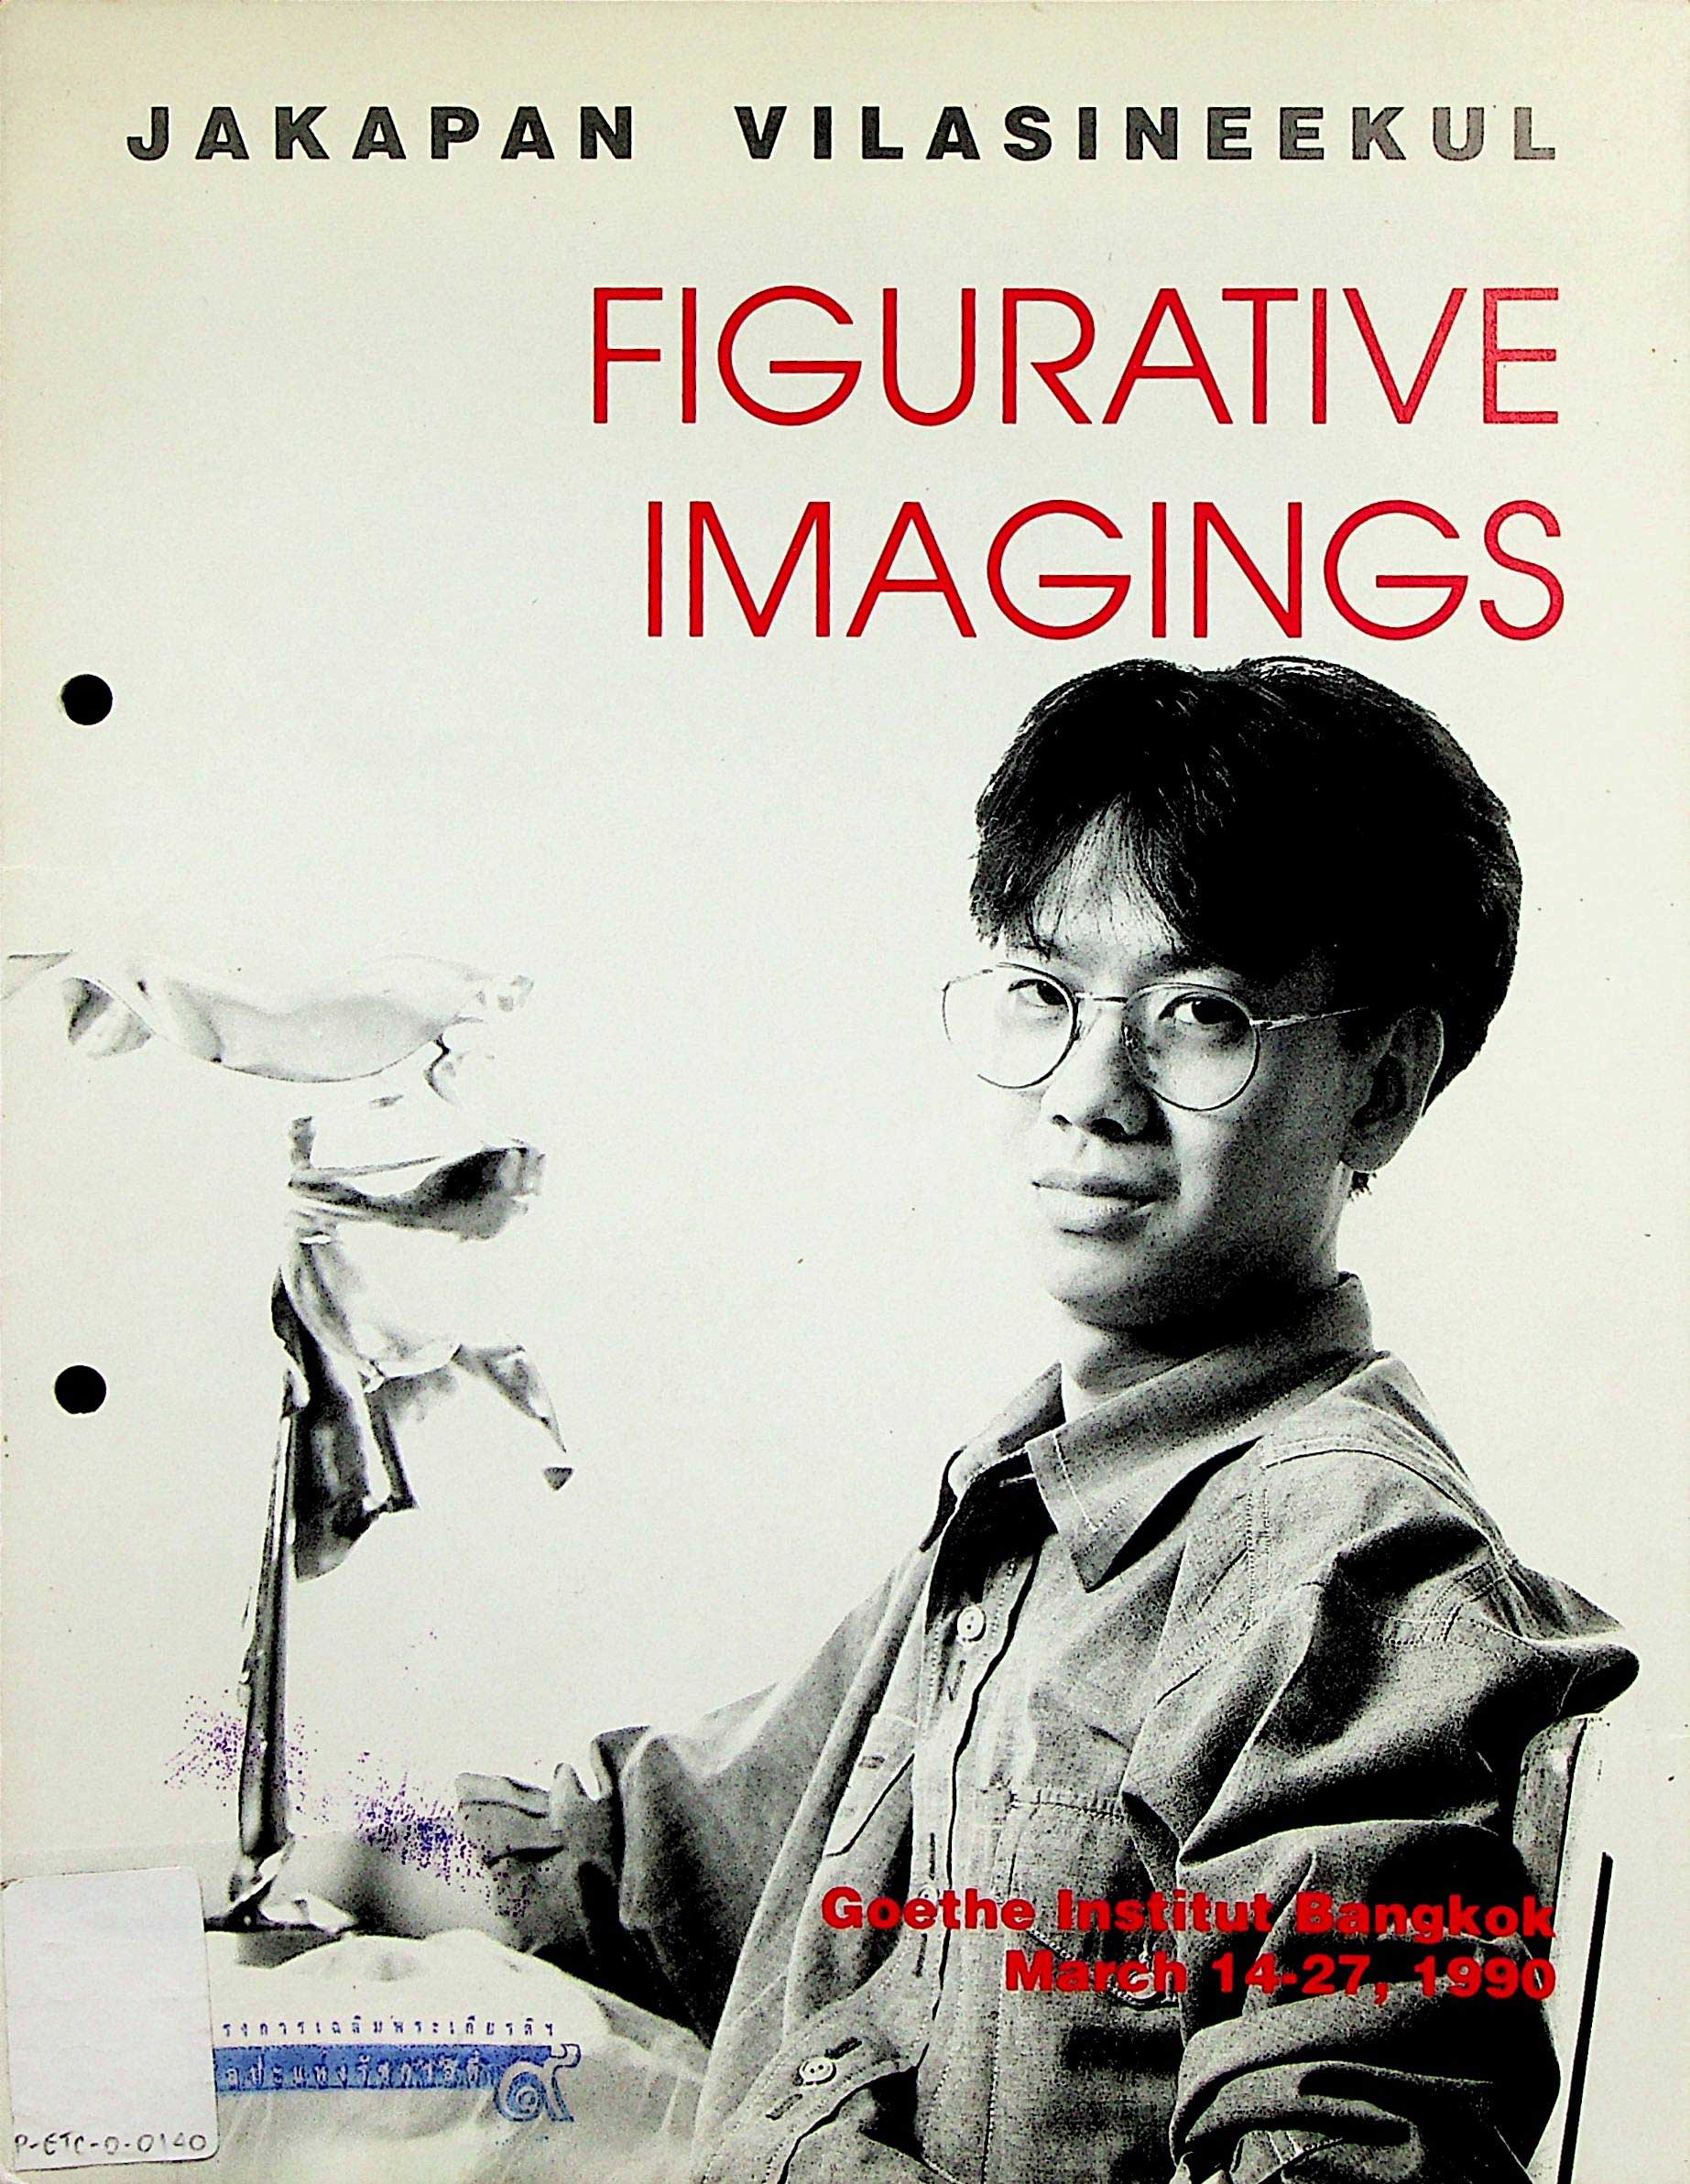 Figurative imagings